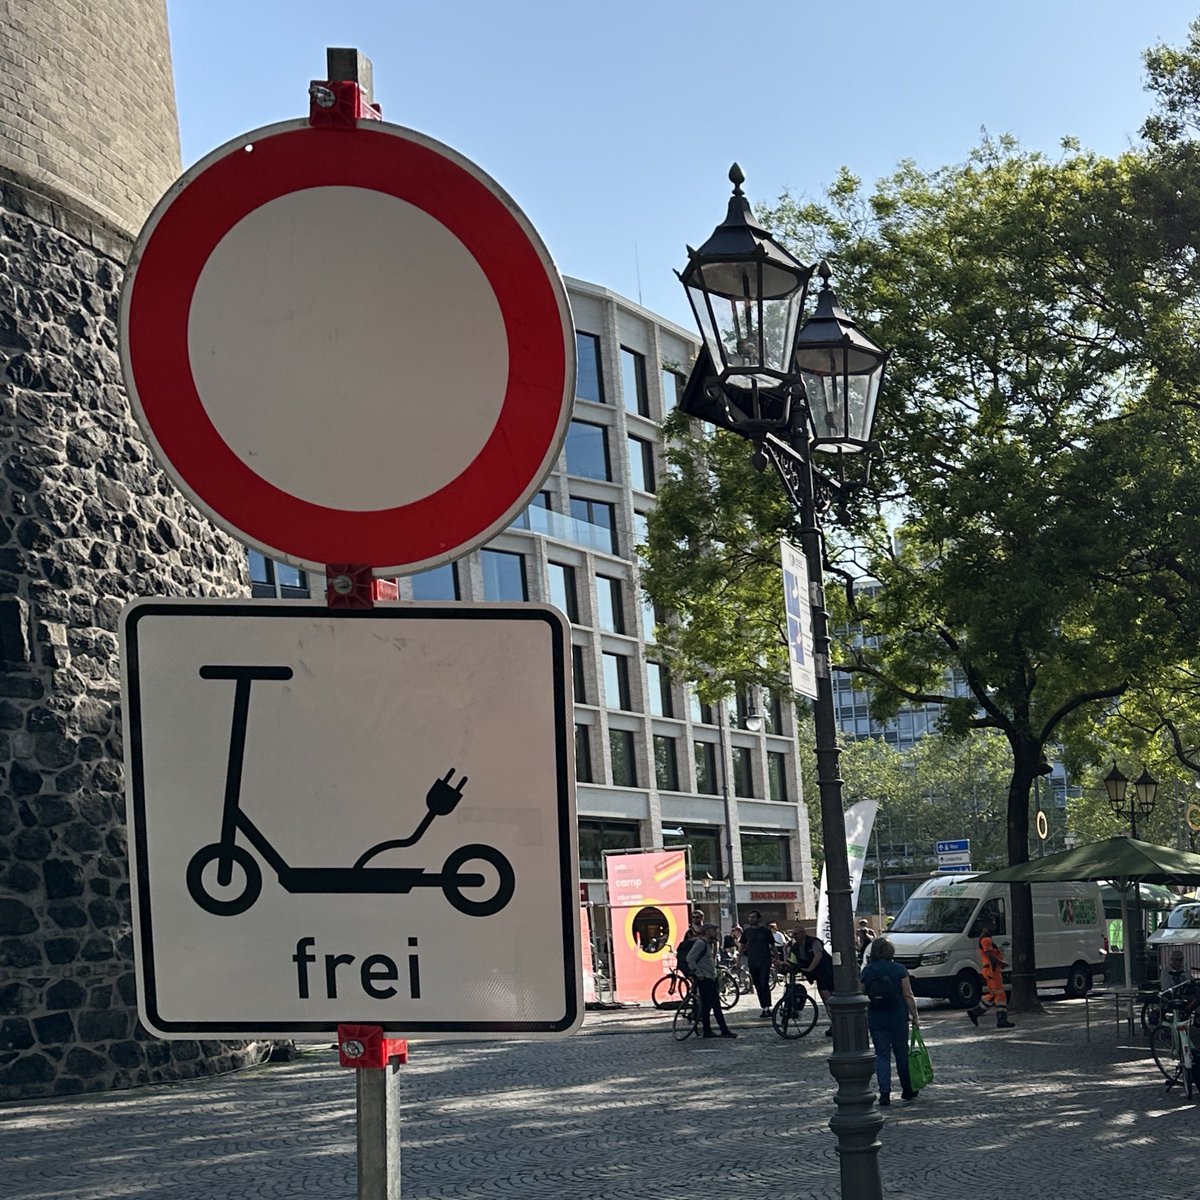 Auf den Eventflächen der @polisMOBILITY in @Koeln, wie hier am Rudolfplatz, ist Radfahren verboten, aber E-Scooter sind erlaubt.